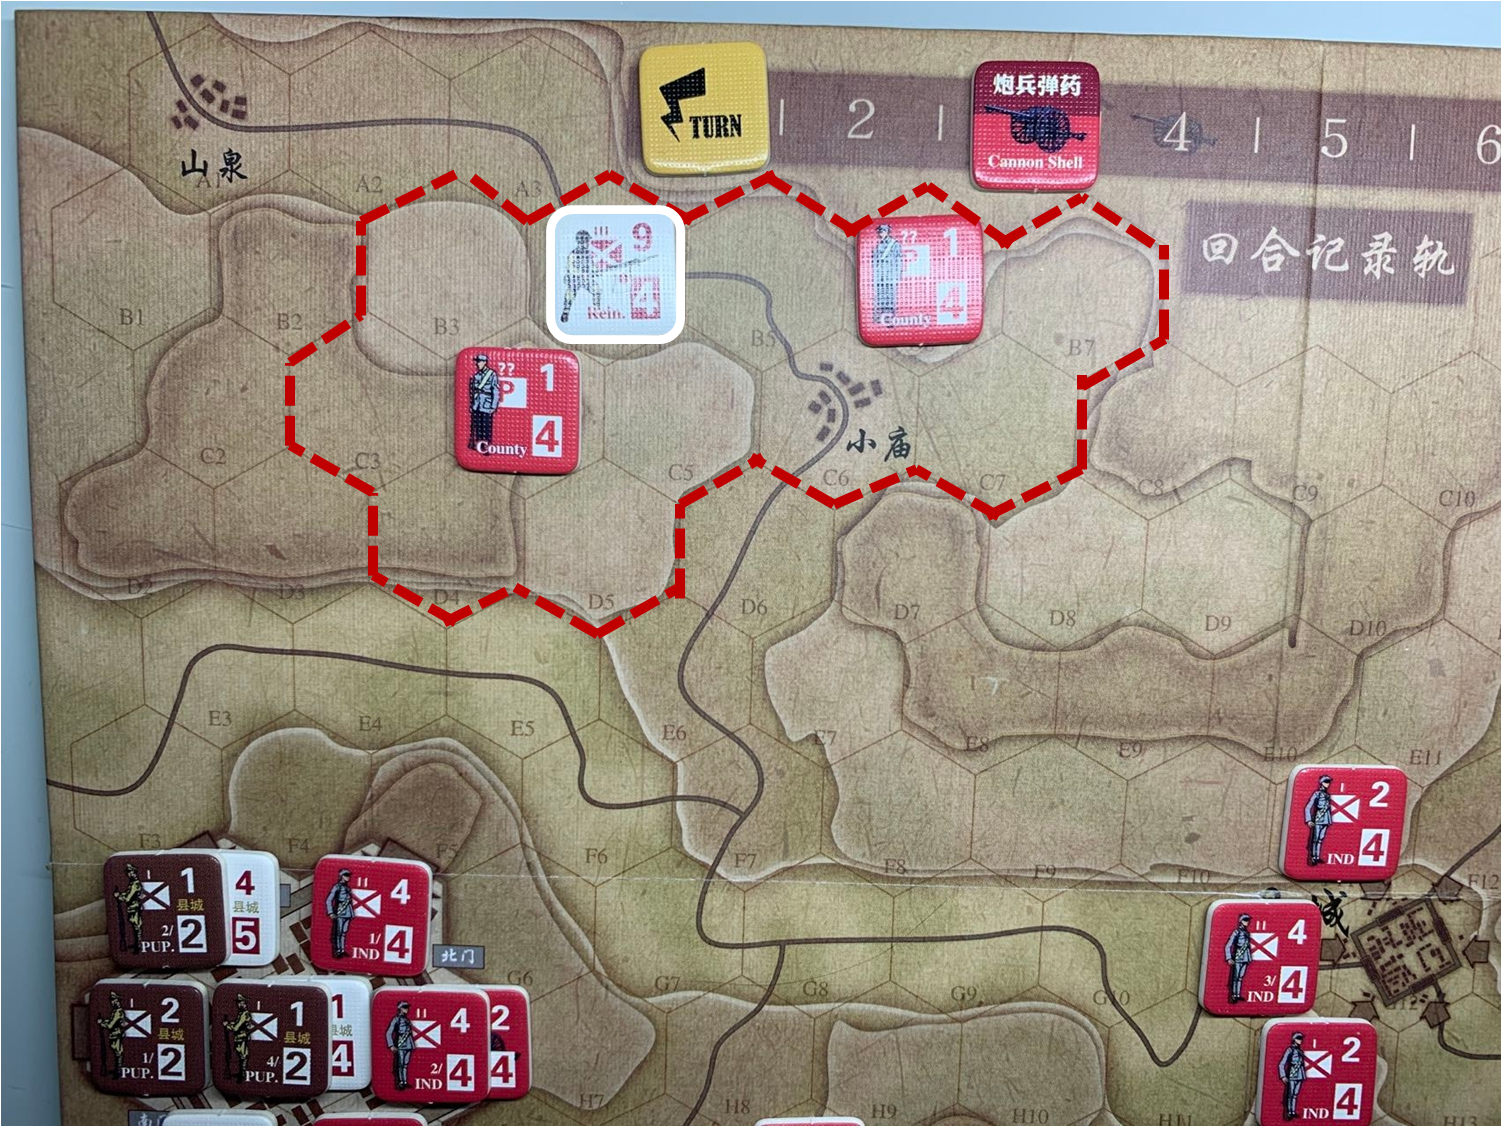 第一回合日军山泉方向（A1）部队对于移动命令1的执行结果